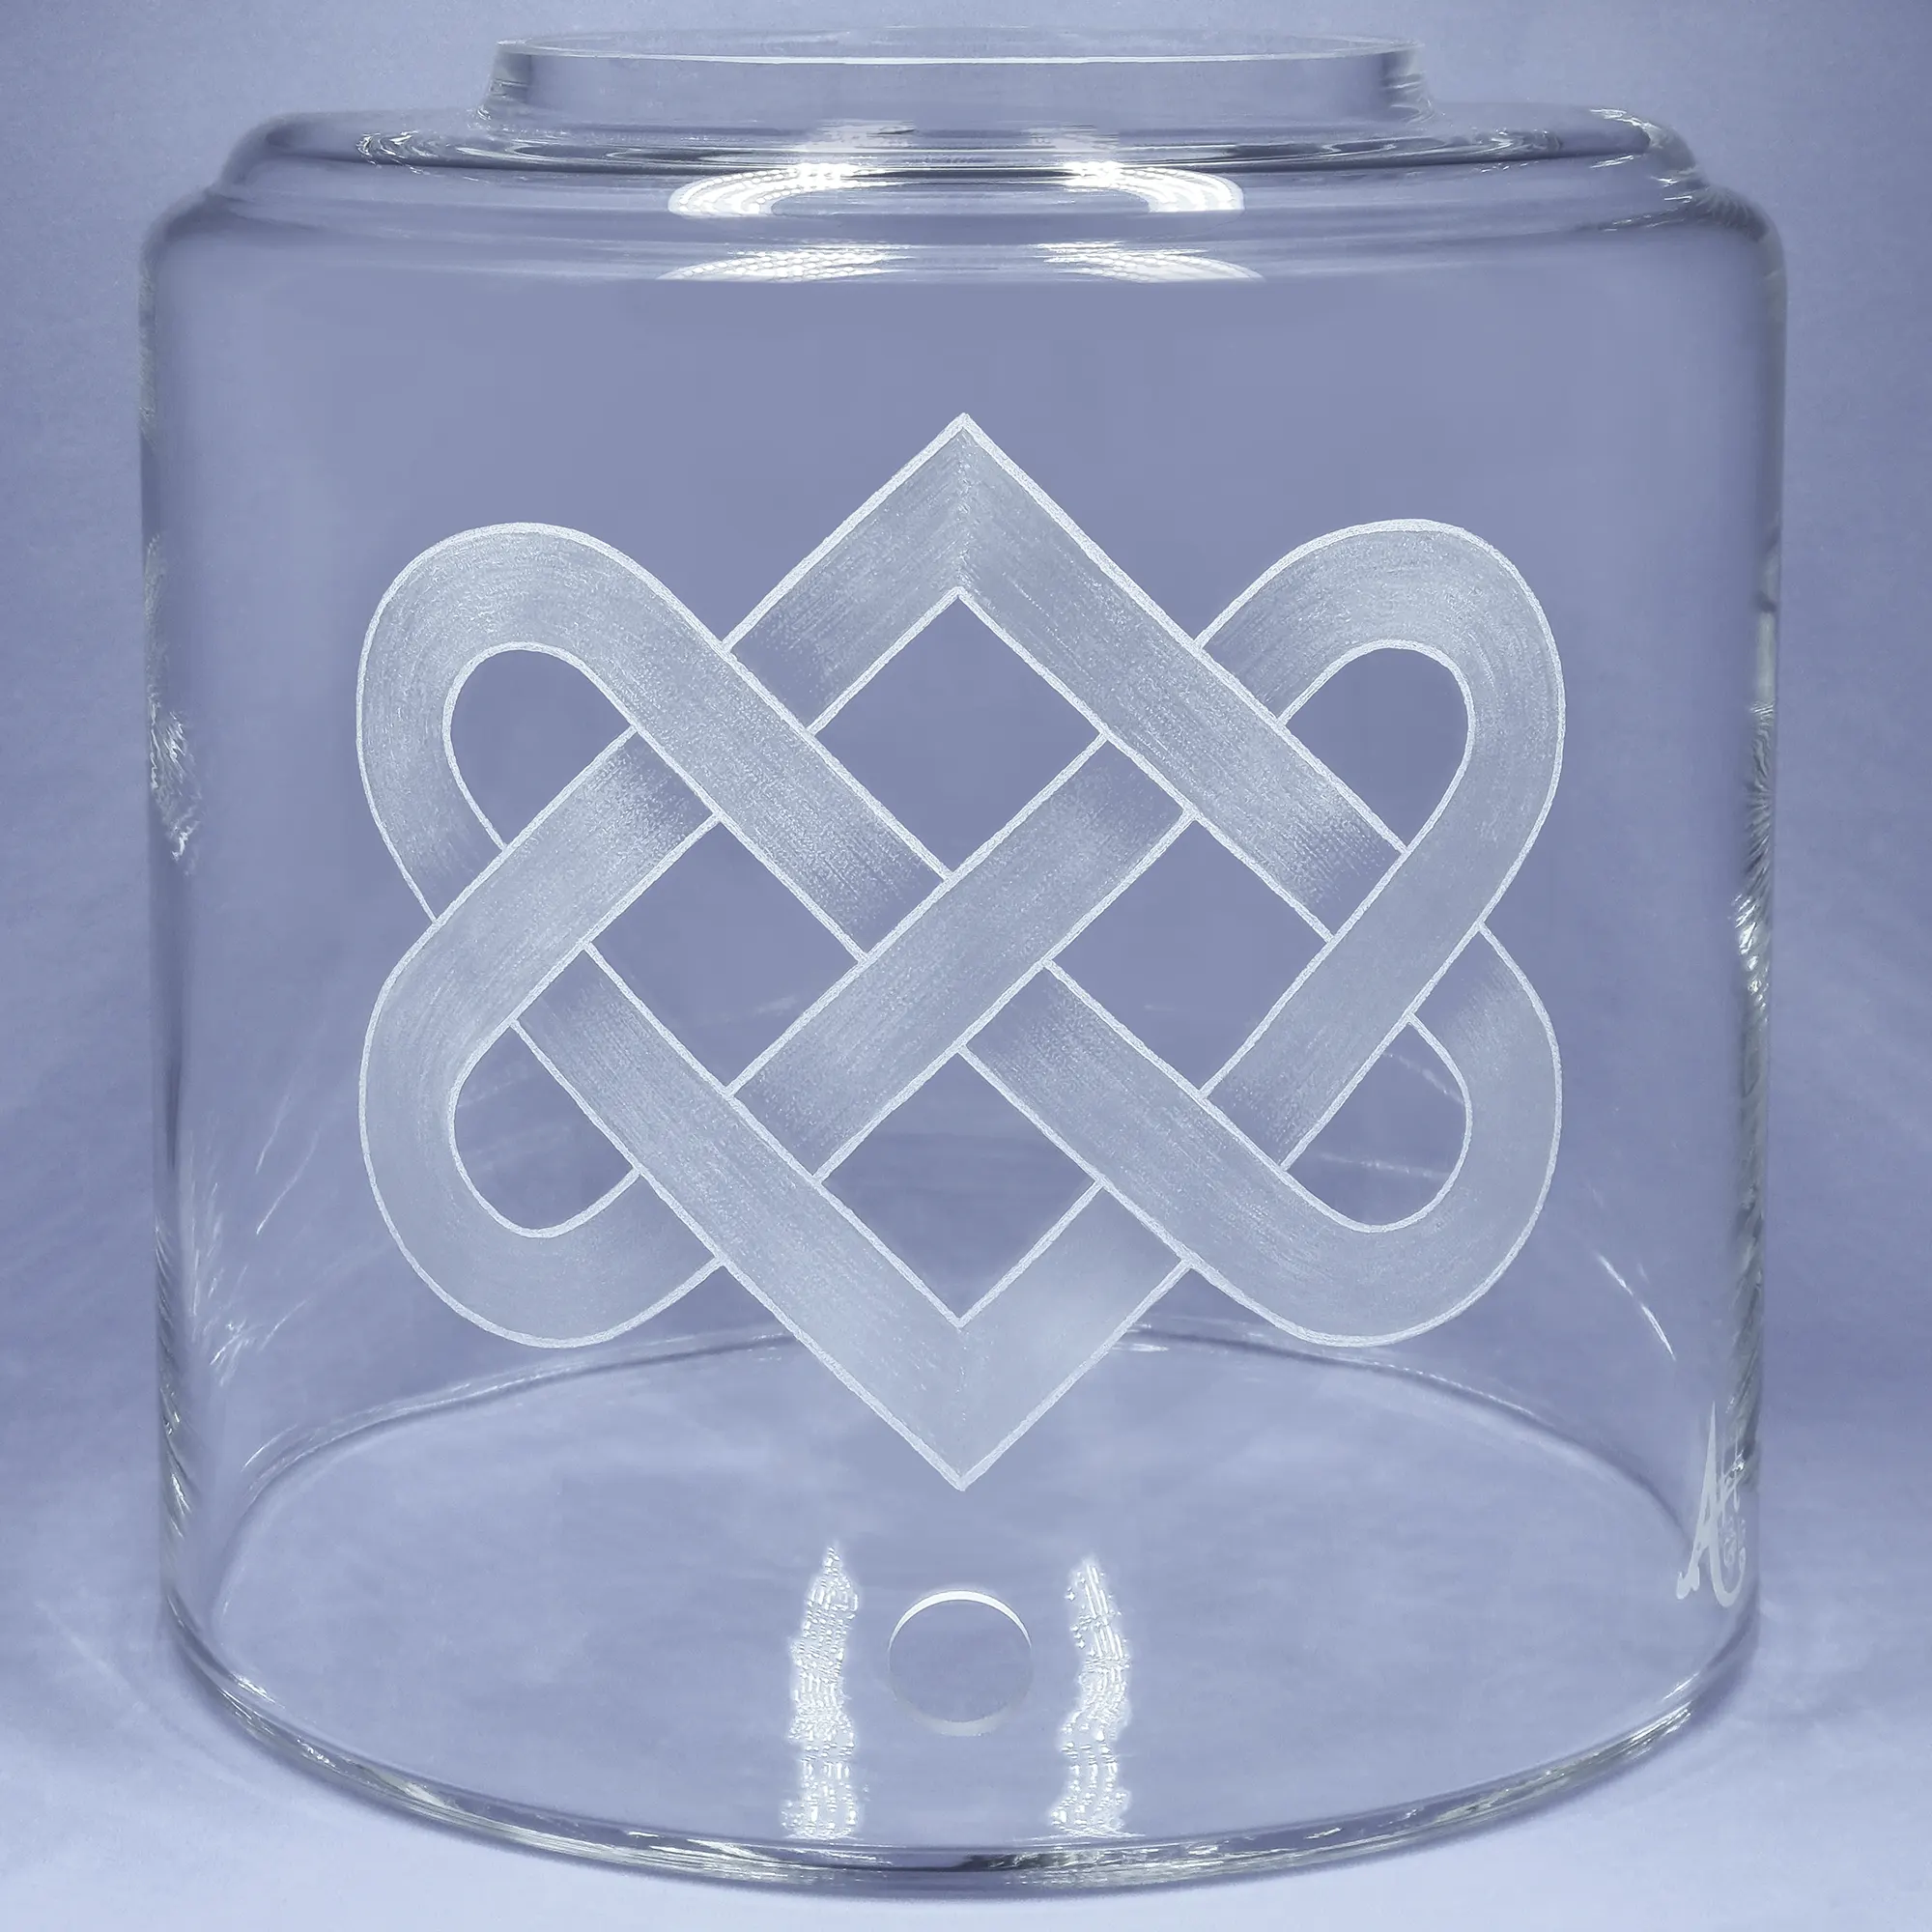 Vorratstank für einen Acala Wasserfilter aus klarem Glas auf, dass der Liebesknoten graviert ist.